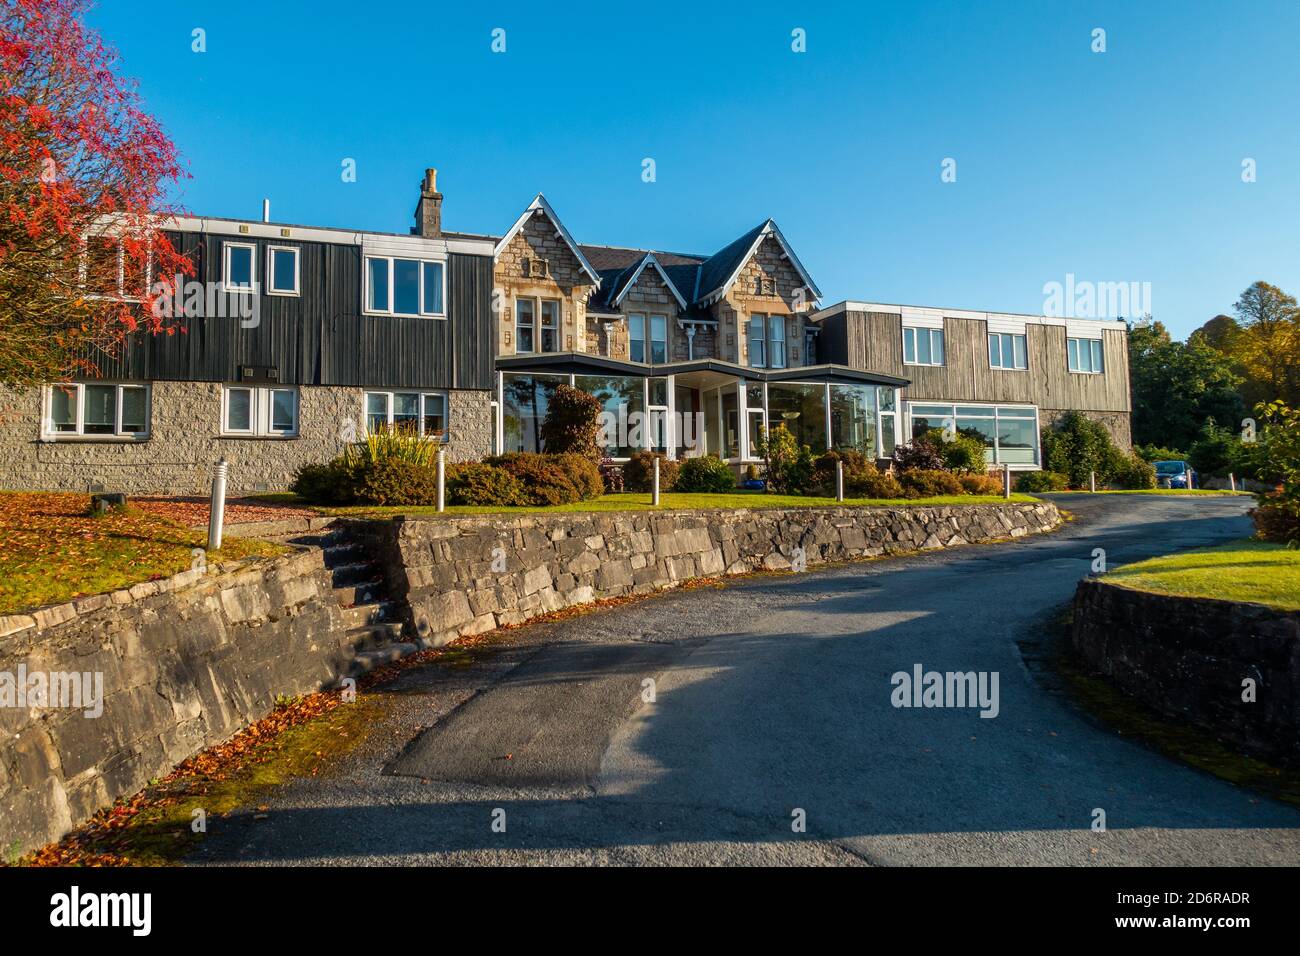 L'hôtel AcarSaid dans la ville de Pitlochry, Perthshire, Écosse, Royaume-Uni Banque D'Images